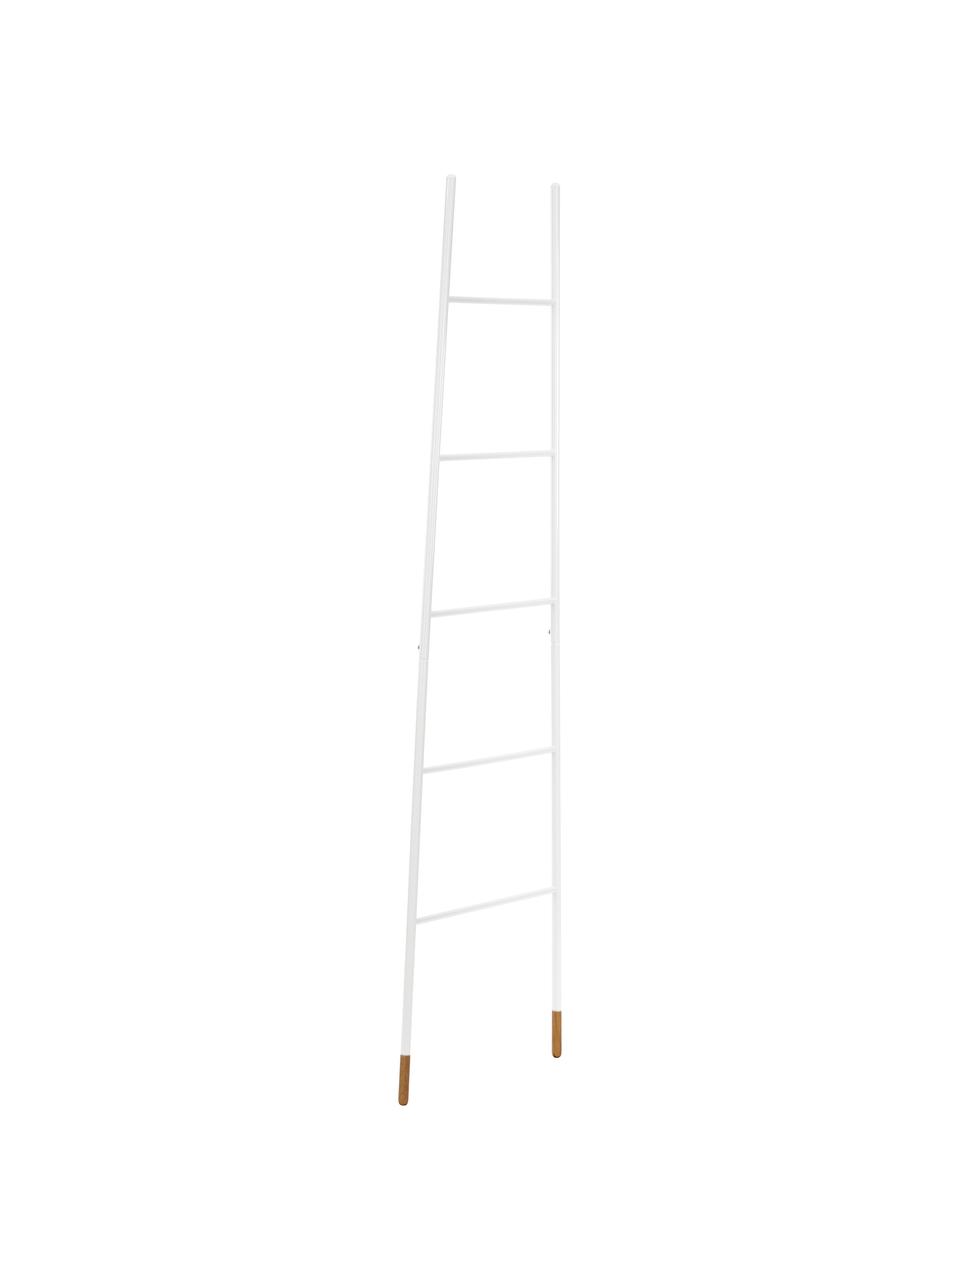 Handtuchleiter Rack Ladder in Weiß, Füße: Gummibaumholz, naturlacki, Weiß, 54 x 175 cm